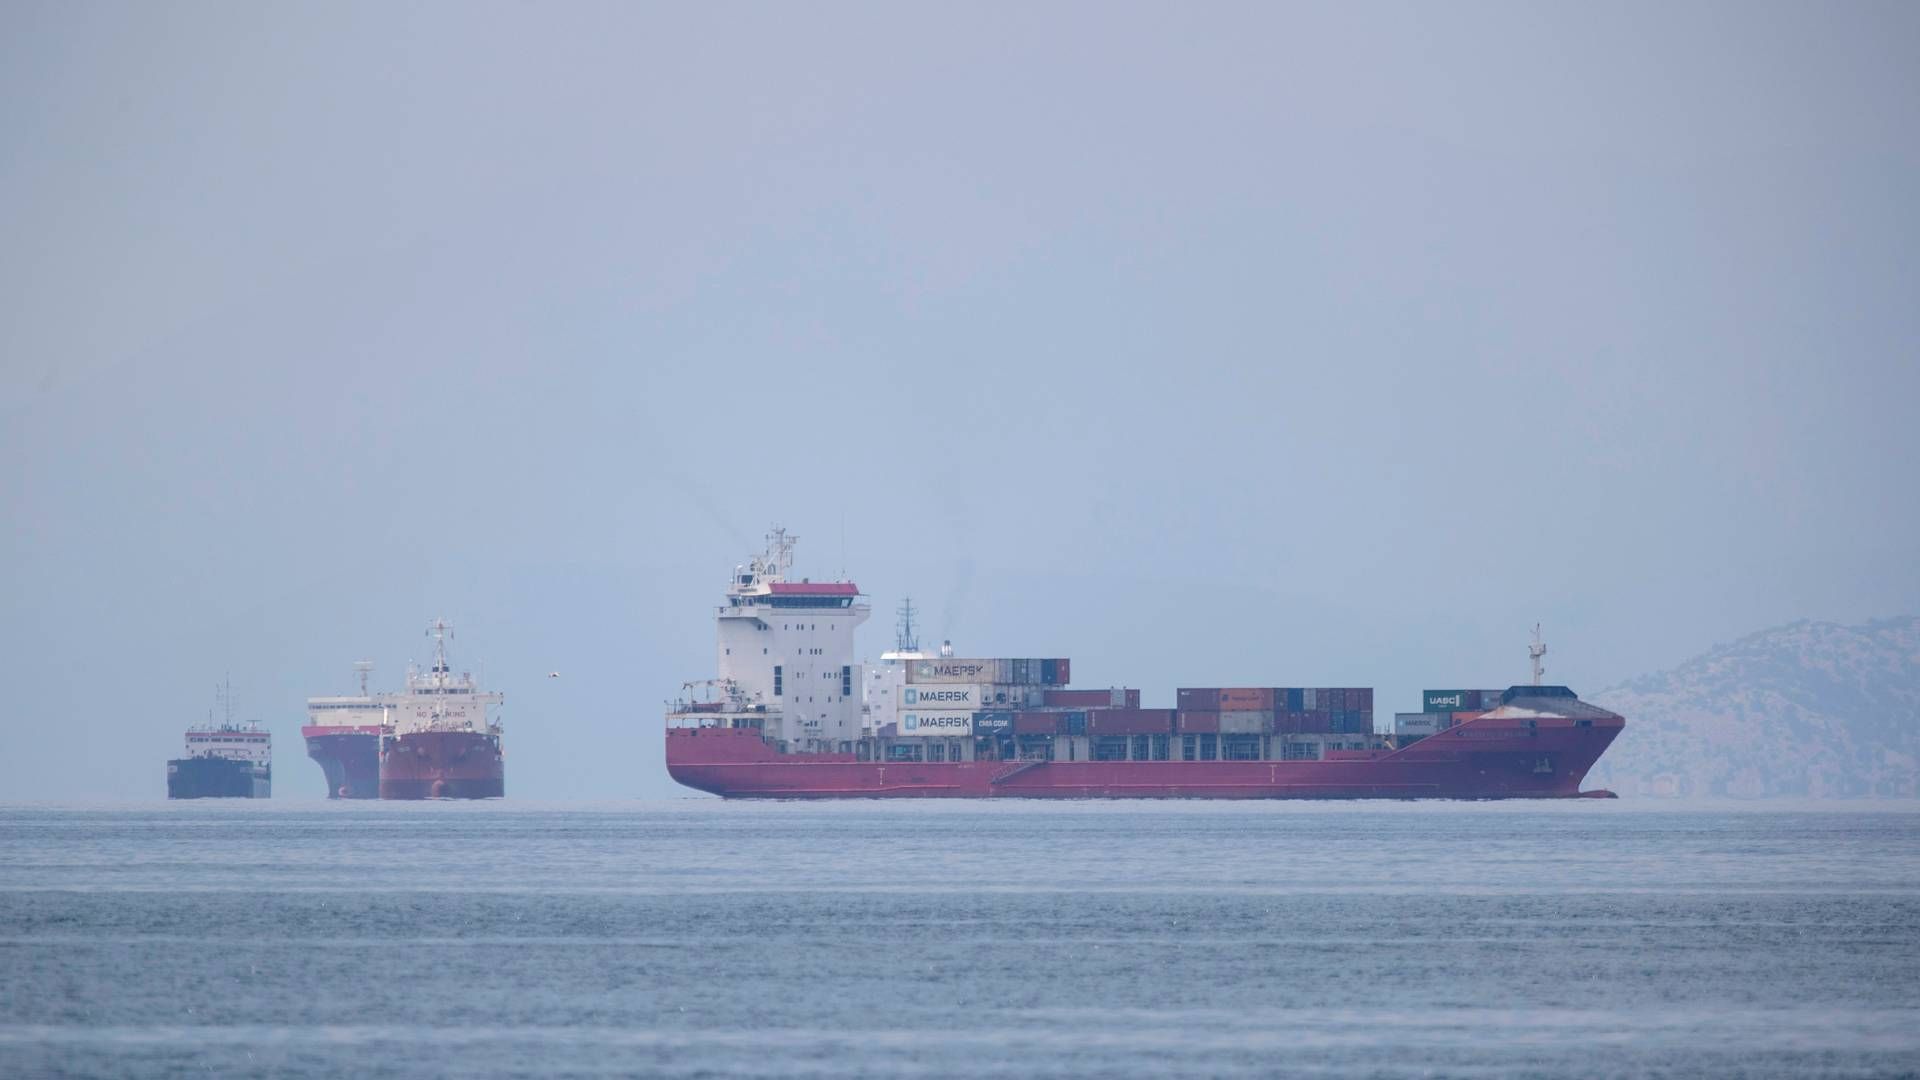 Inden for få år må skibe i Middelhavet kun sejle på brændstof med 0,1 pct. svovl. Landene i IMO er blevet enige om at indføre en ny miljøzone i området. De nærmere detaljer skal nu lægges fast. | Foto: Petros Giannakouris/AP/Ritzau Scanpix